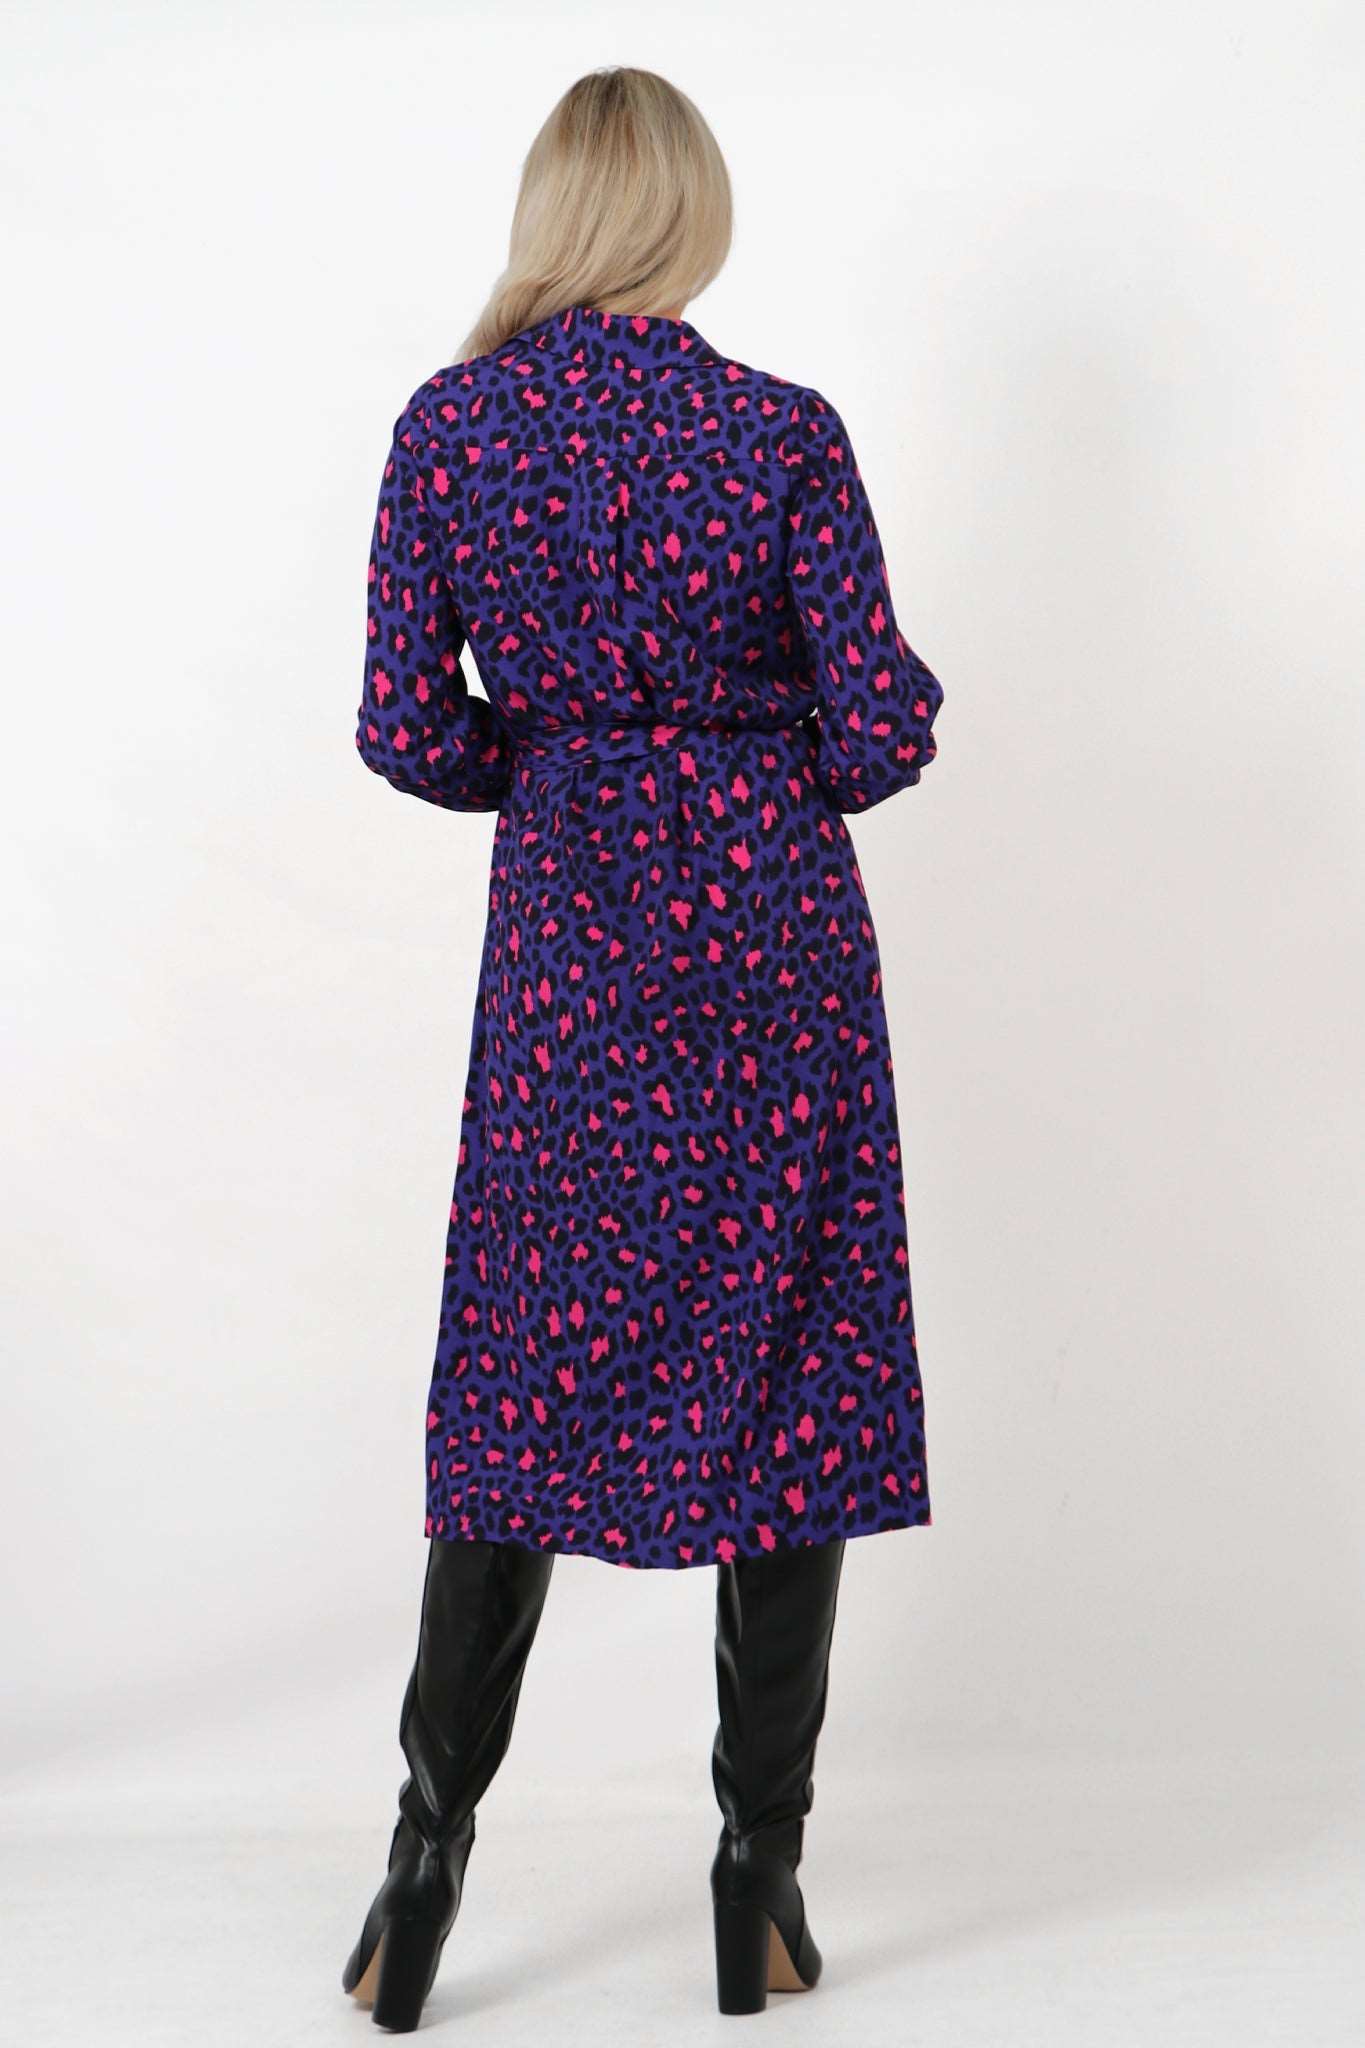 Leopard Print Button Down Shirt Dress with Pockets - Allison's Boutique